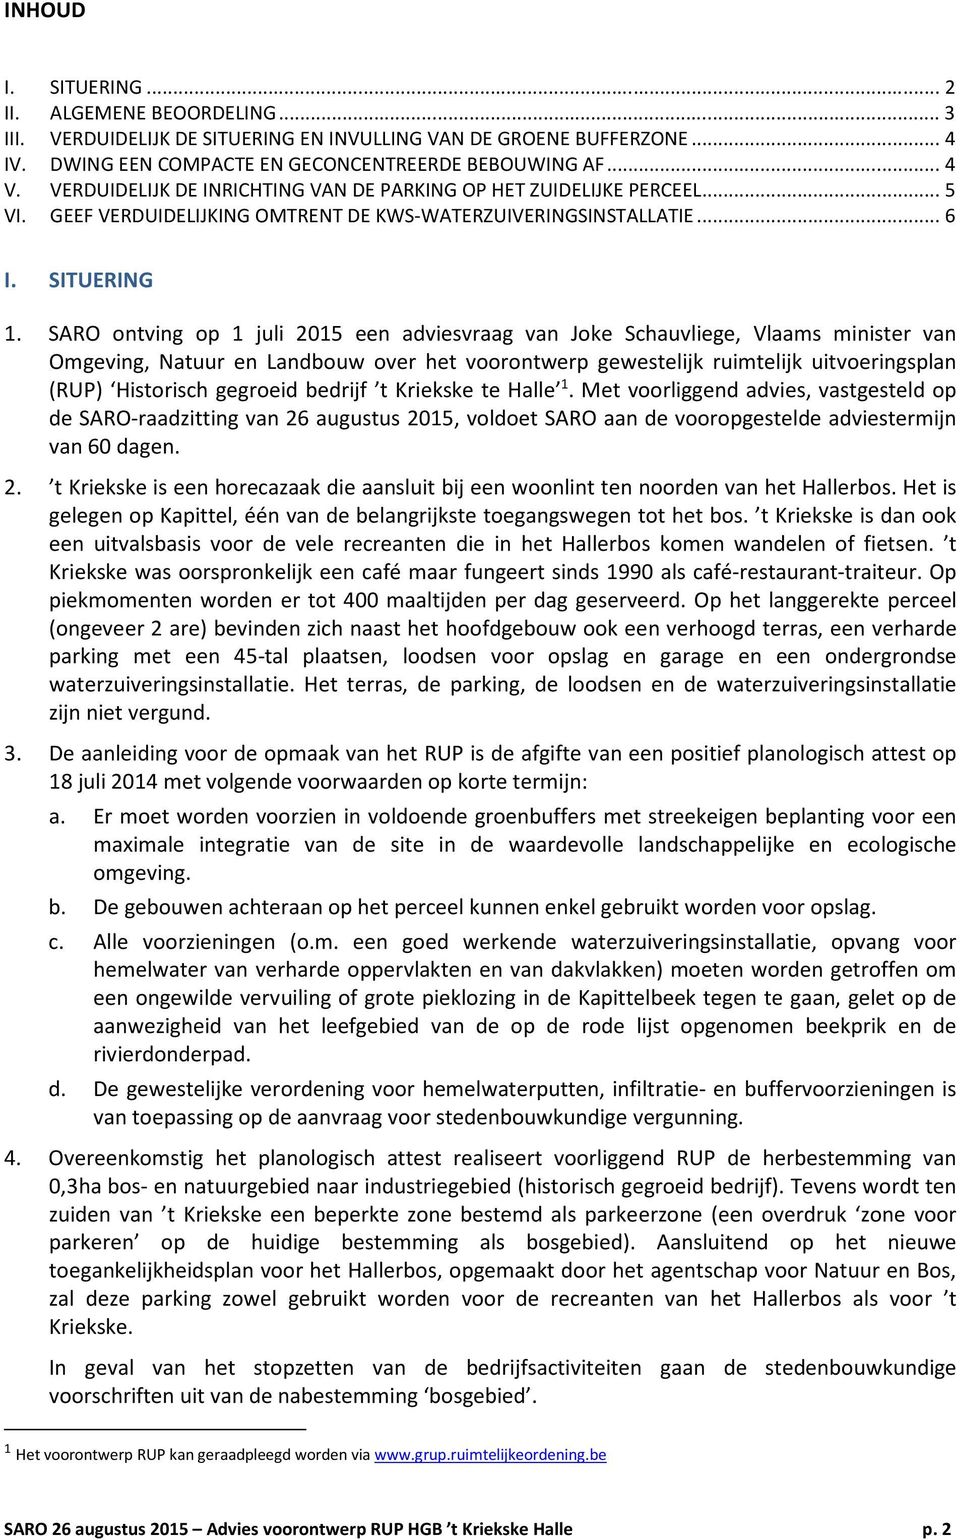 SARO ontving op 1 juli 2015 een adviesvraag van Joke Schauvliege, Vlaams minister van Omgeving, Natuur en Landbouw over het voorontwerp gewestelijk ruimtelijk uitvoeringsplan (RUP) Historisch